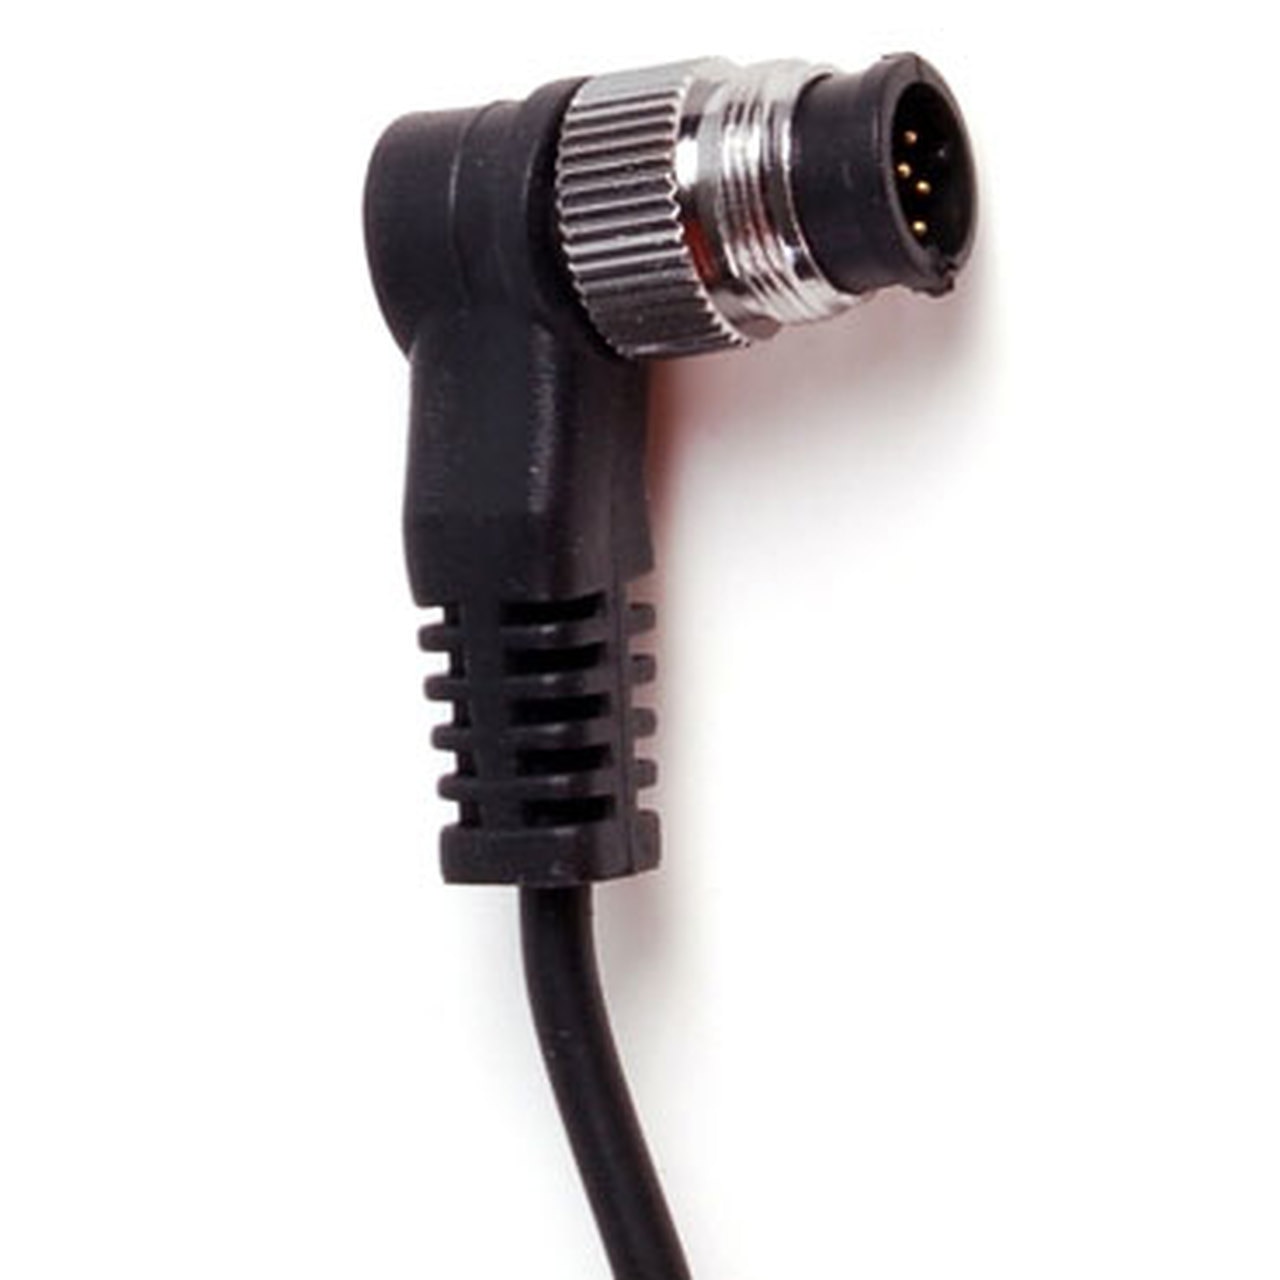 Promaster 1464 Camera Release Cable for  Nikon MC30 (requires remote)